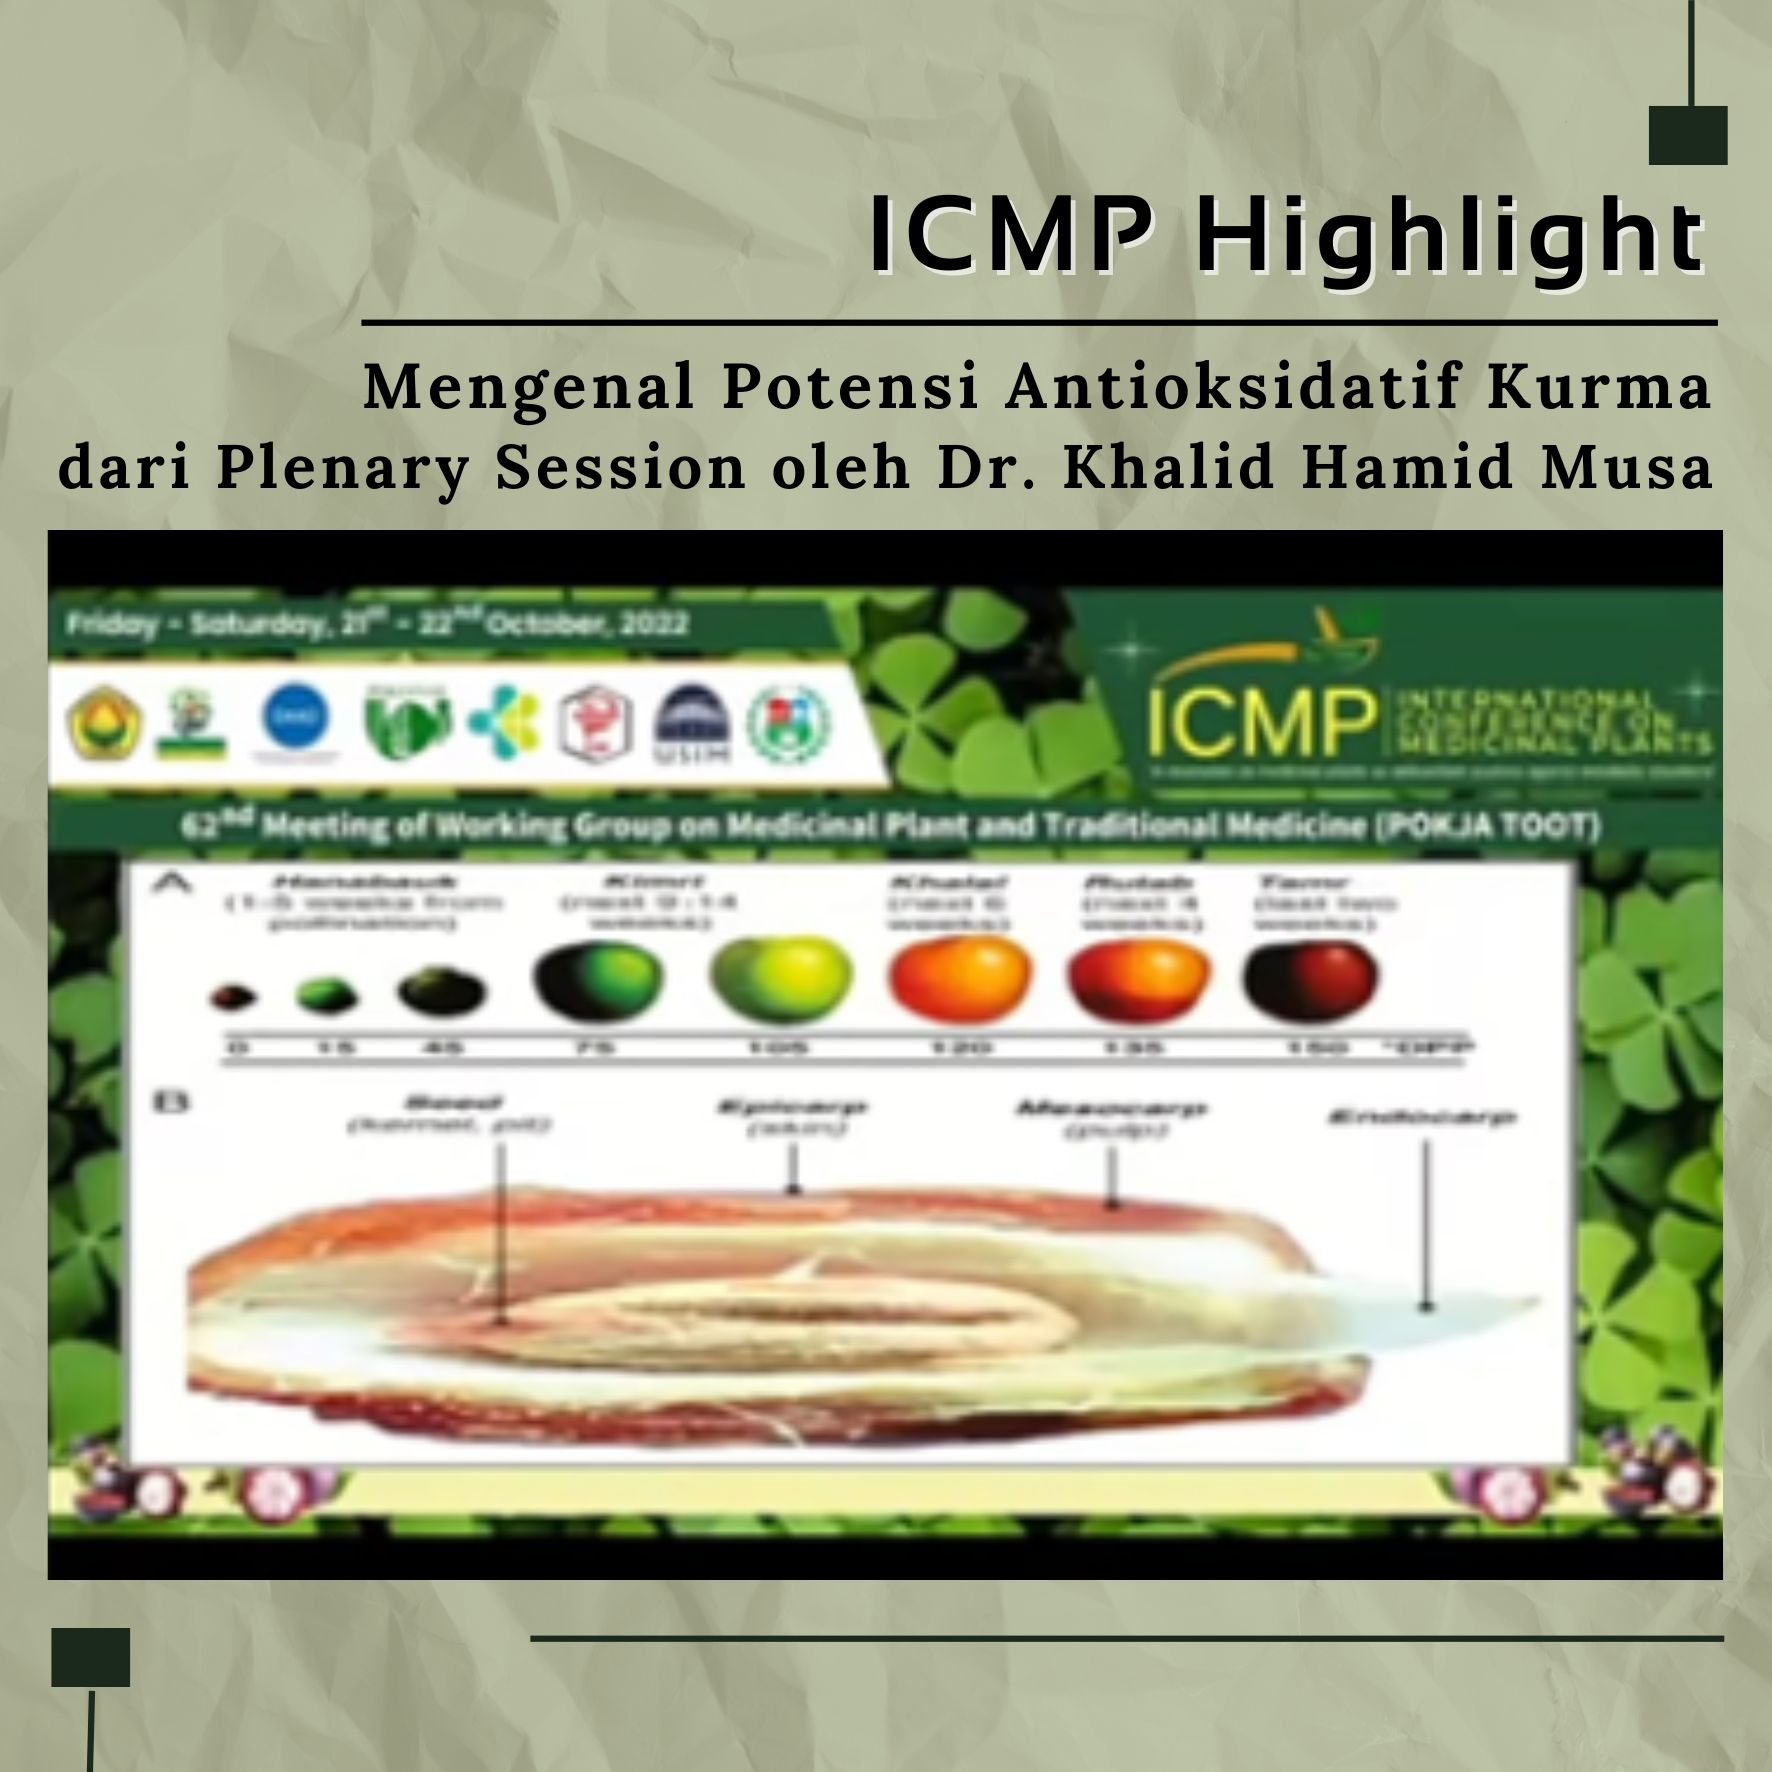 ICMP Highlight: Mengenal Potensi Antioksidatif Kurma dari Plenary Session oleh Dr. Khalid Hamid Musa